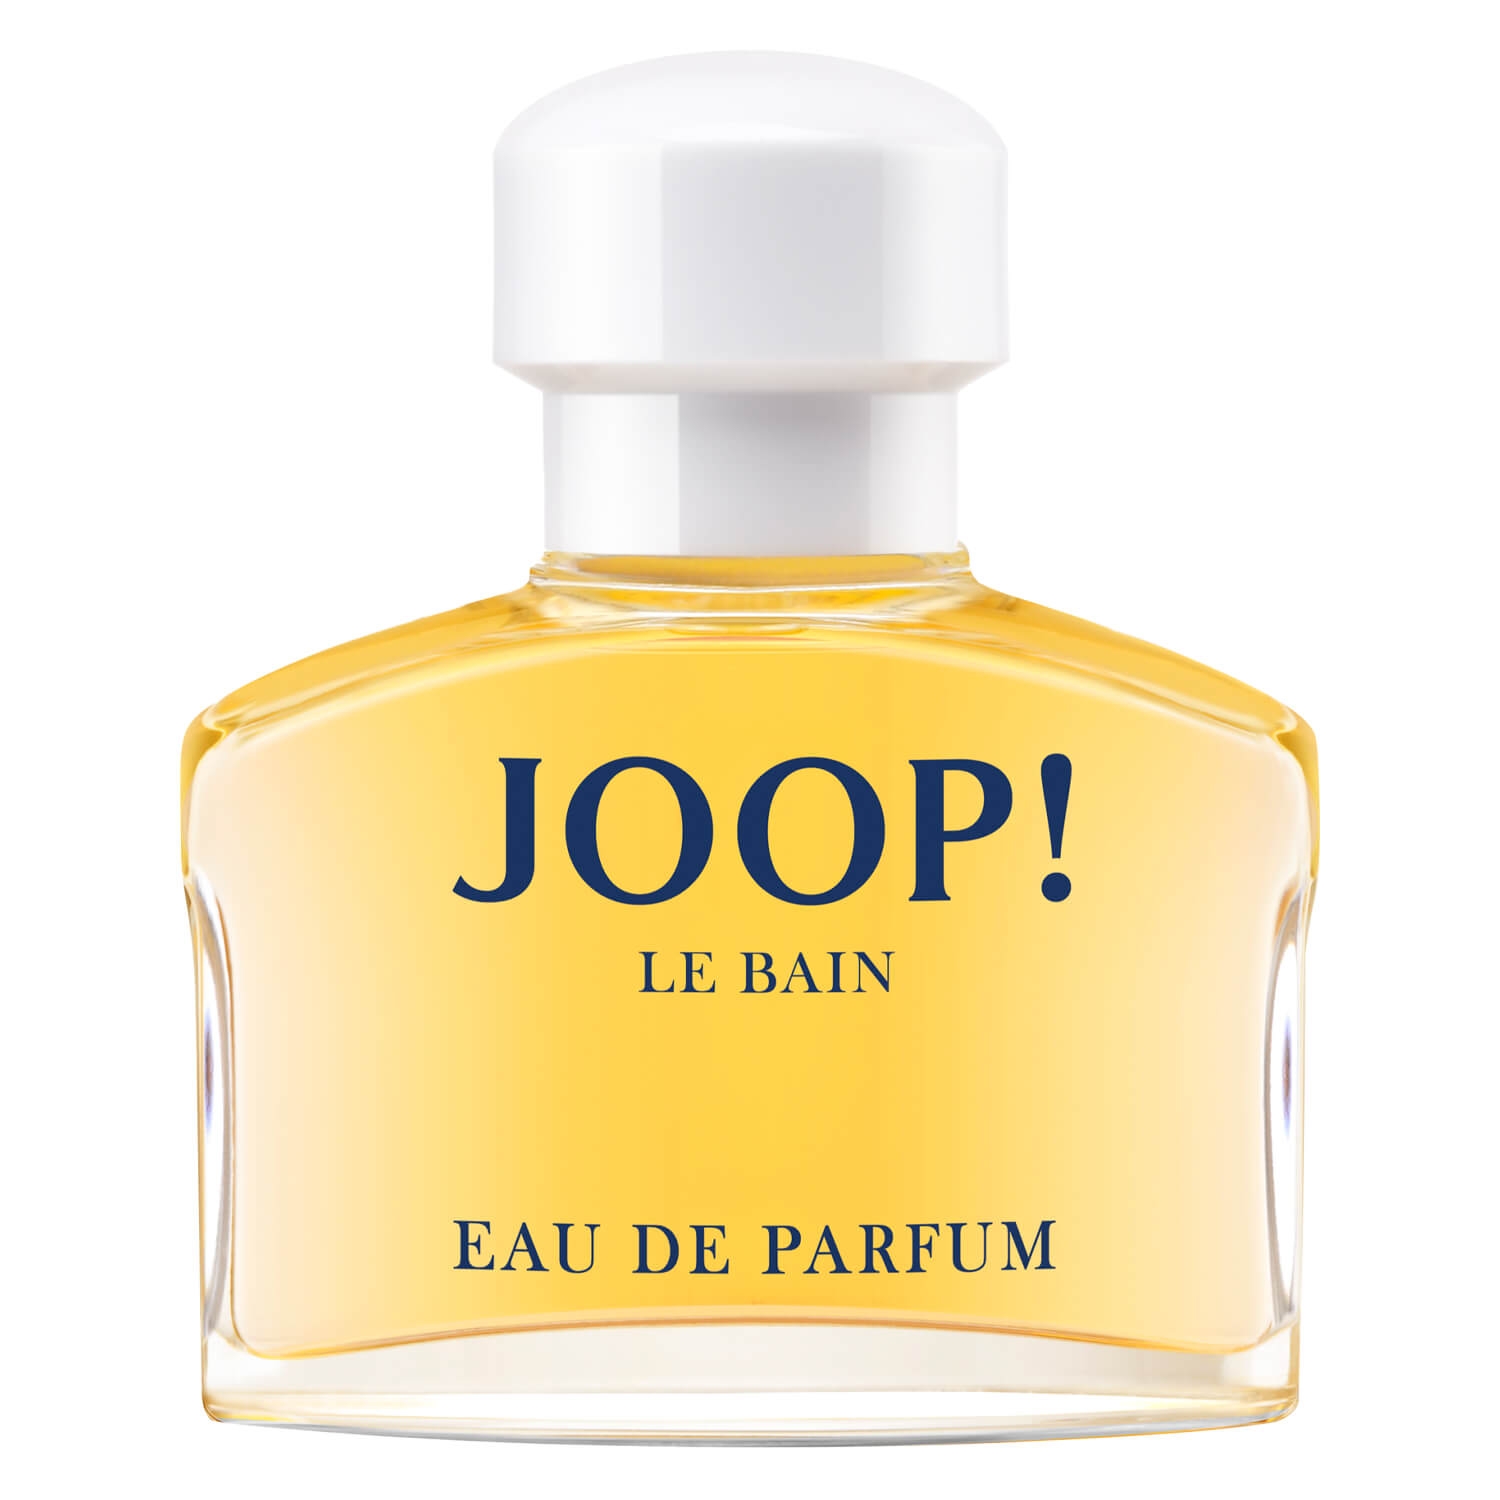 Produktbild von Joop! Le Bain - Eau de Parfum